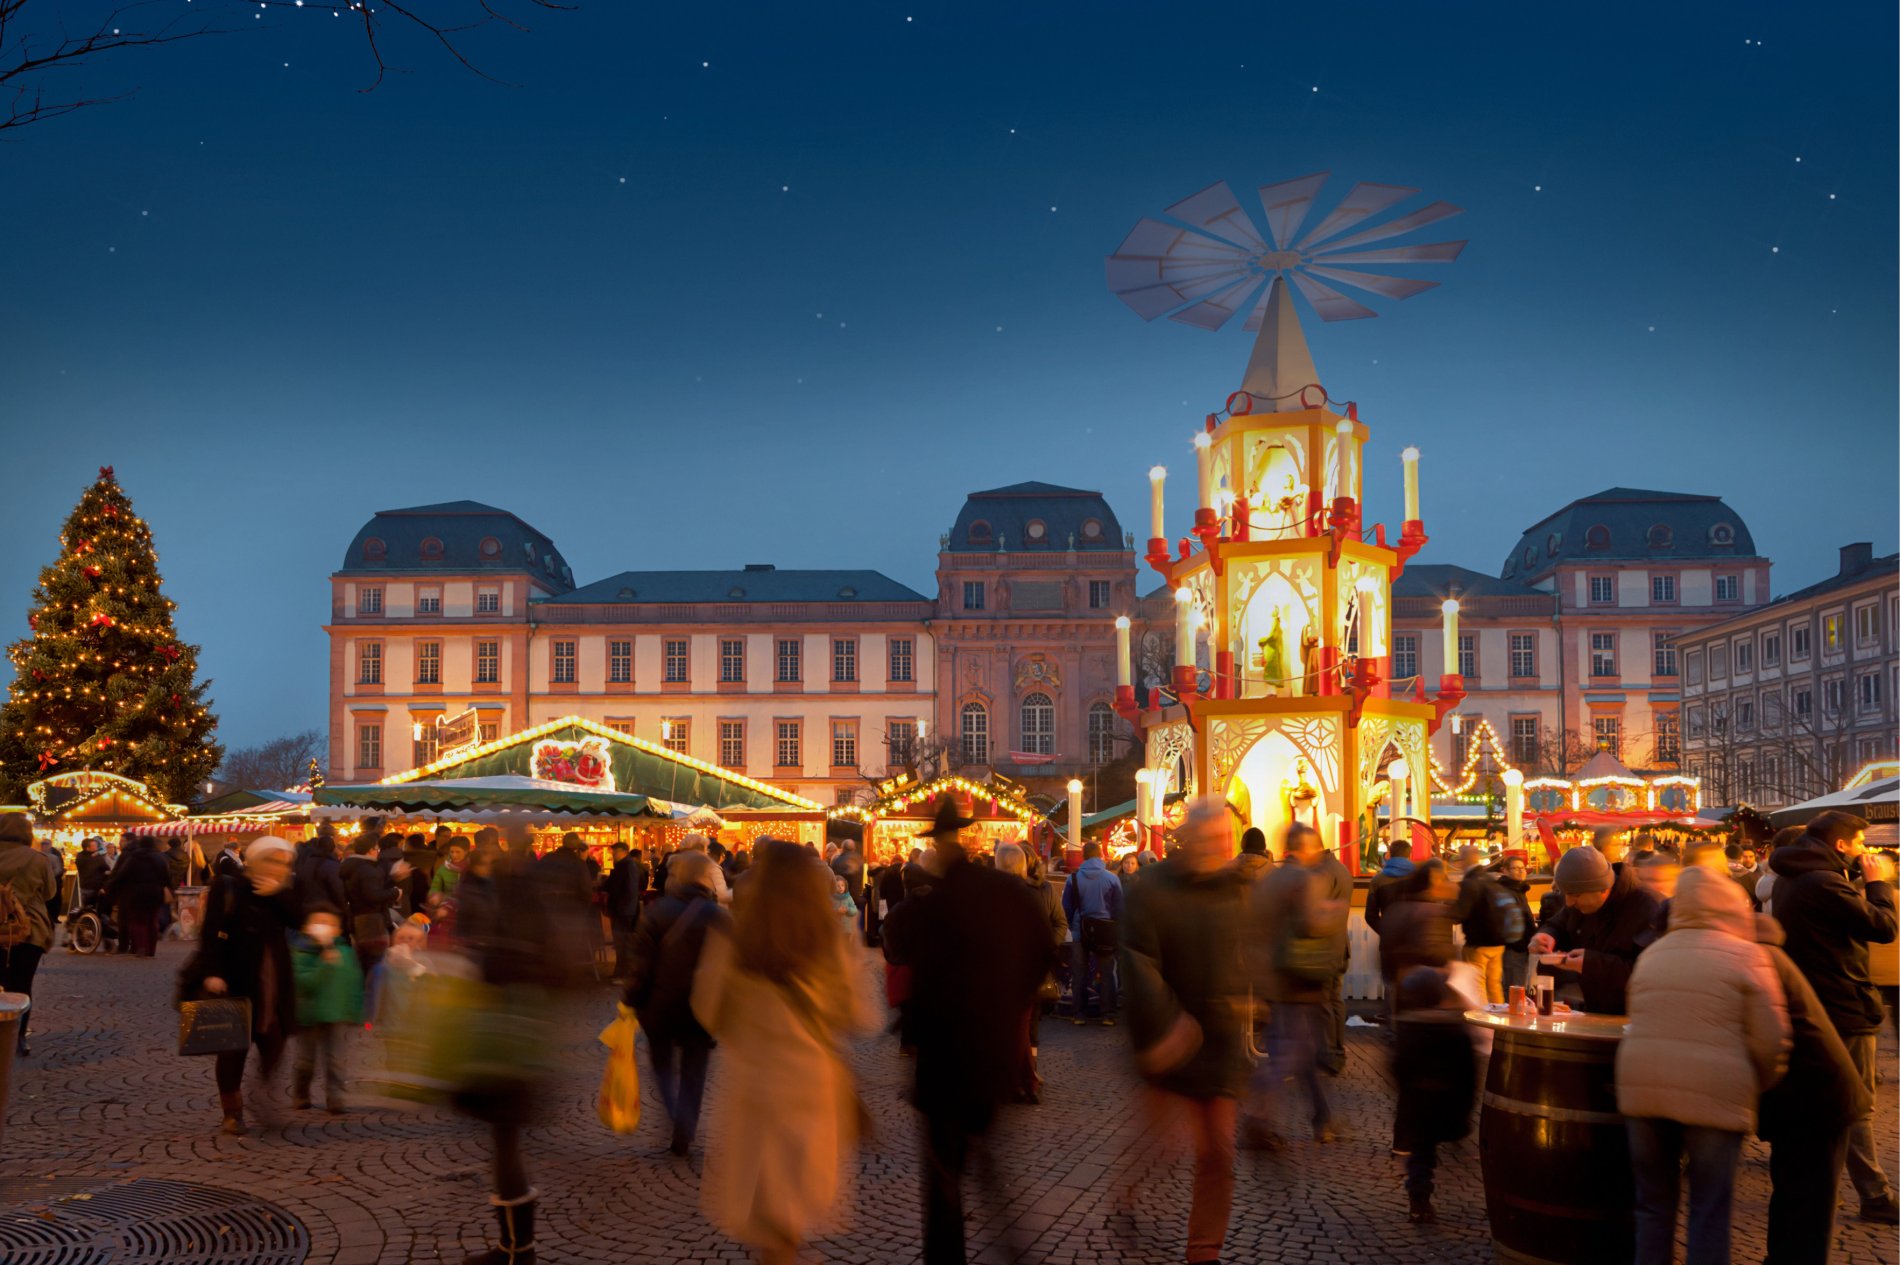 Blick von oben auf den Marktplatz mit beleuchtetem Weihnachtsbaum und Weihnachtsmarktständen, im Hintergrund das Alte Rathaus und der Turm der Stadtkirche.